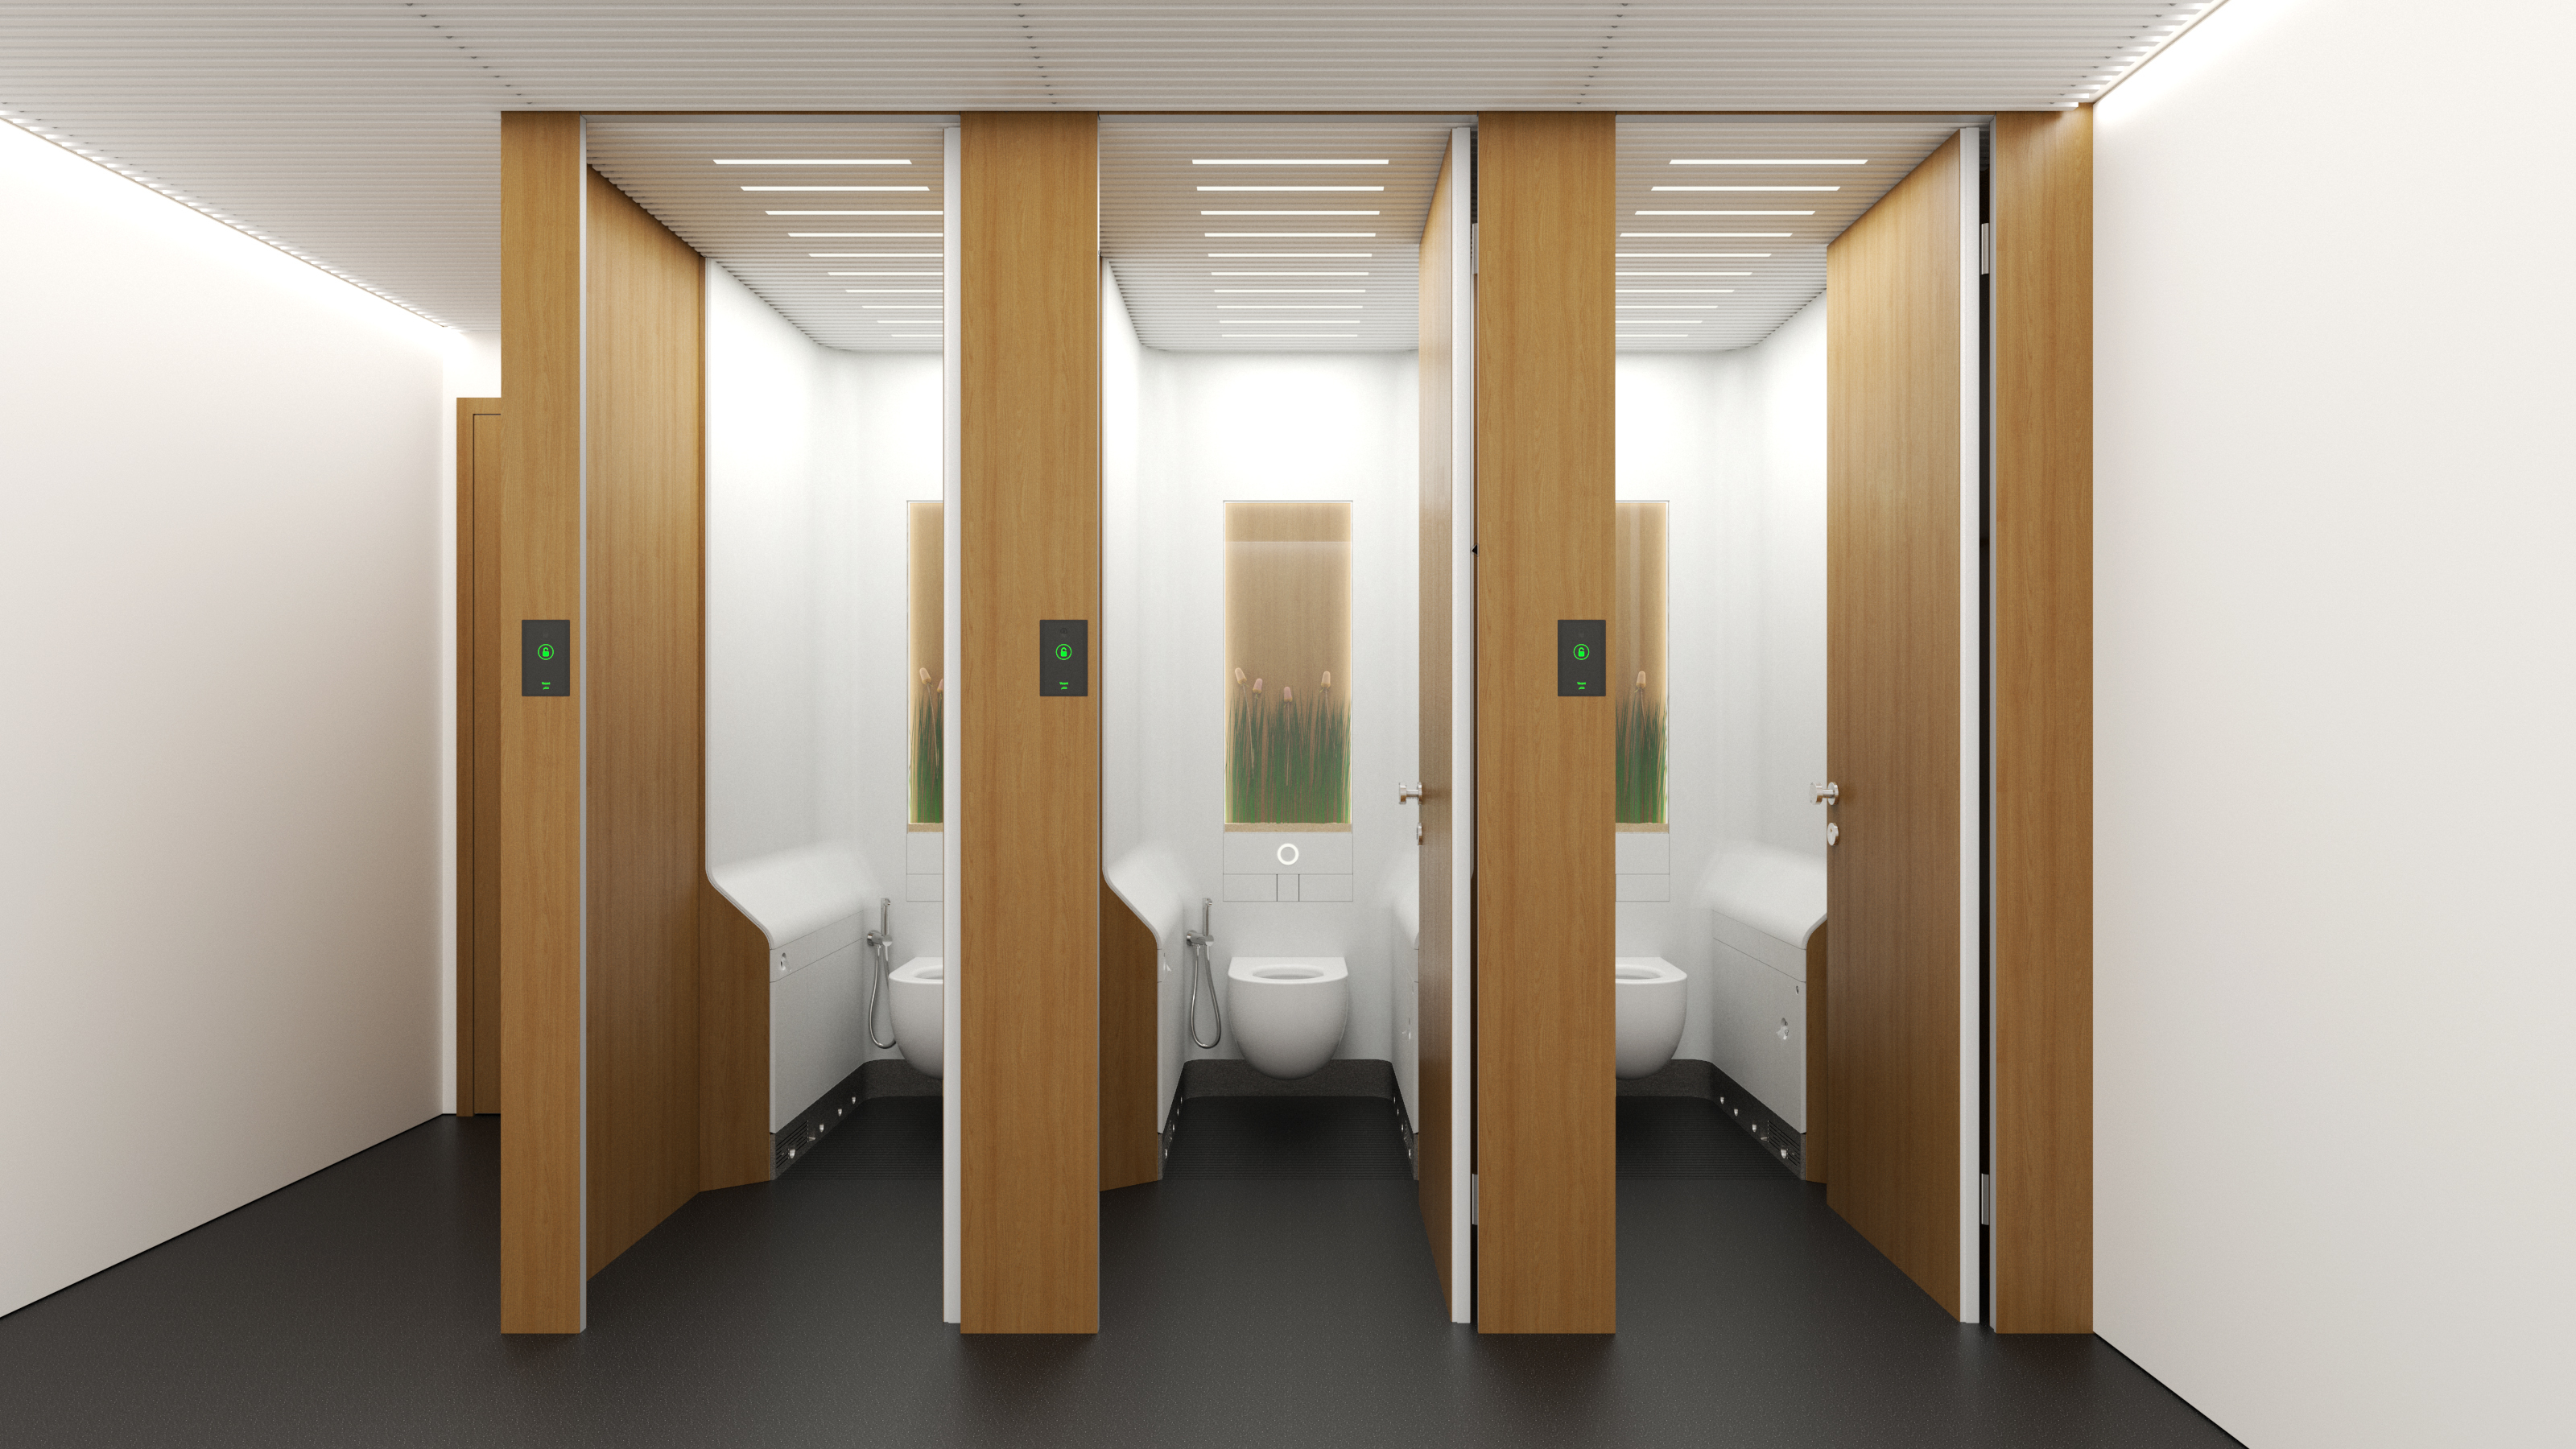 Toilet laboratory много денег последняя версия. HPL панели для санузла. HPL панели для ванной комнаты. Дизайн школьного туалета. Туалеты в школе дизайн.